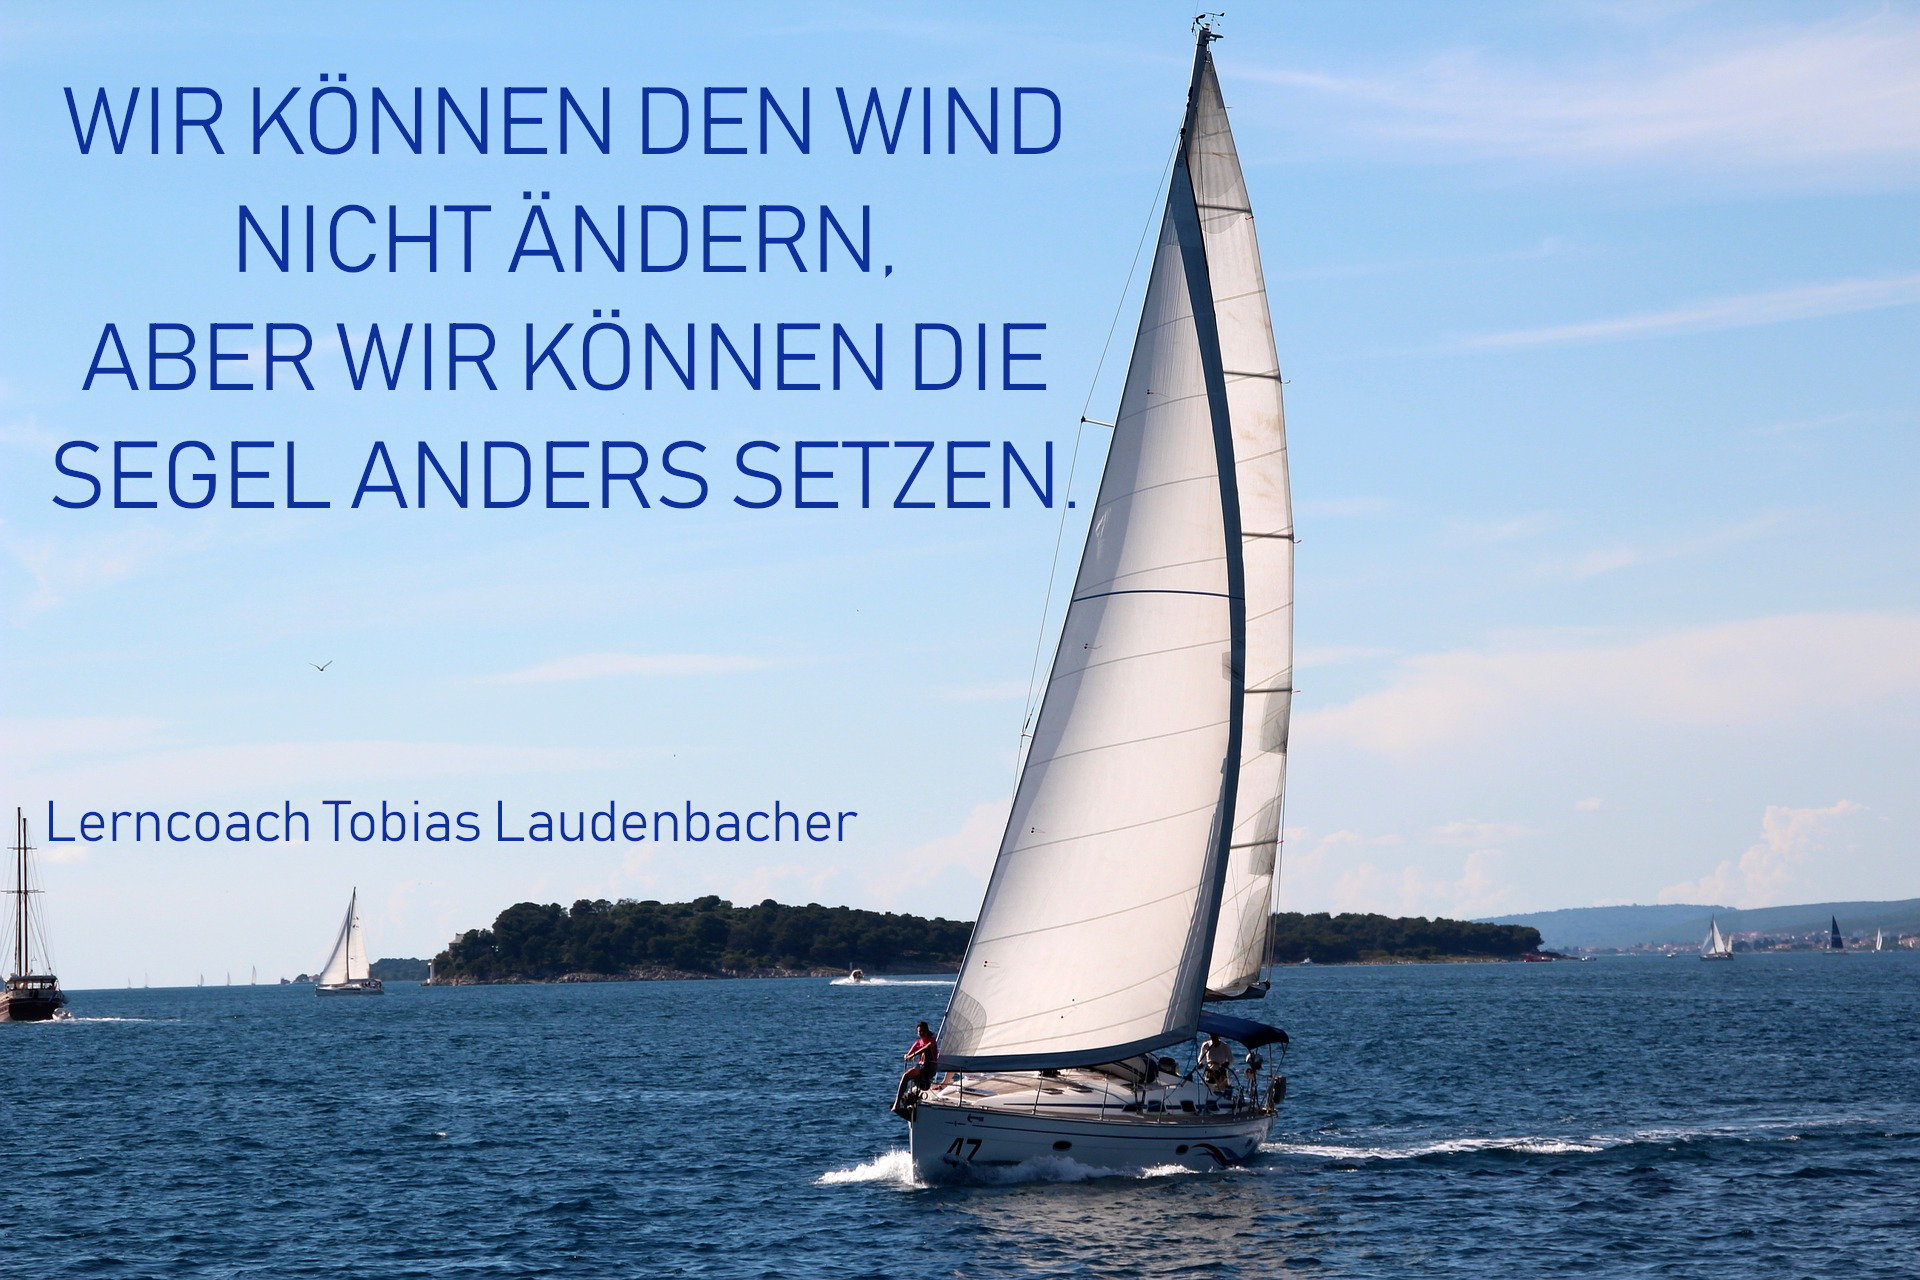 04_Quote_Wir_können_den_Wind_nicht_aendern